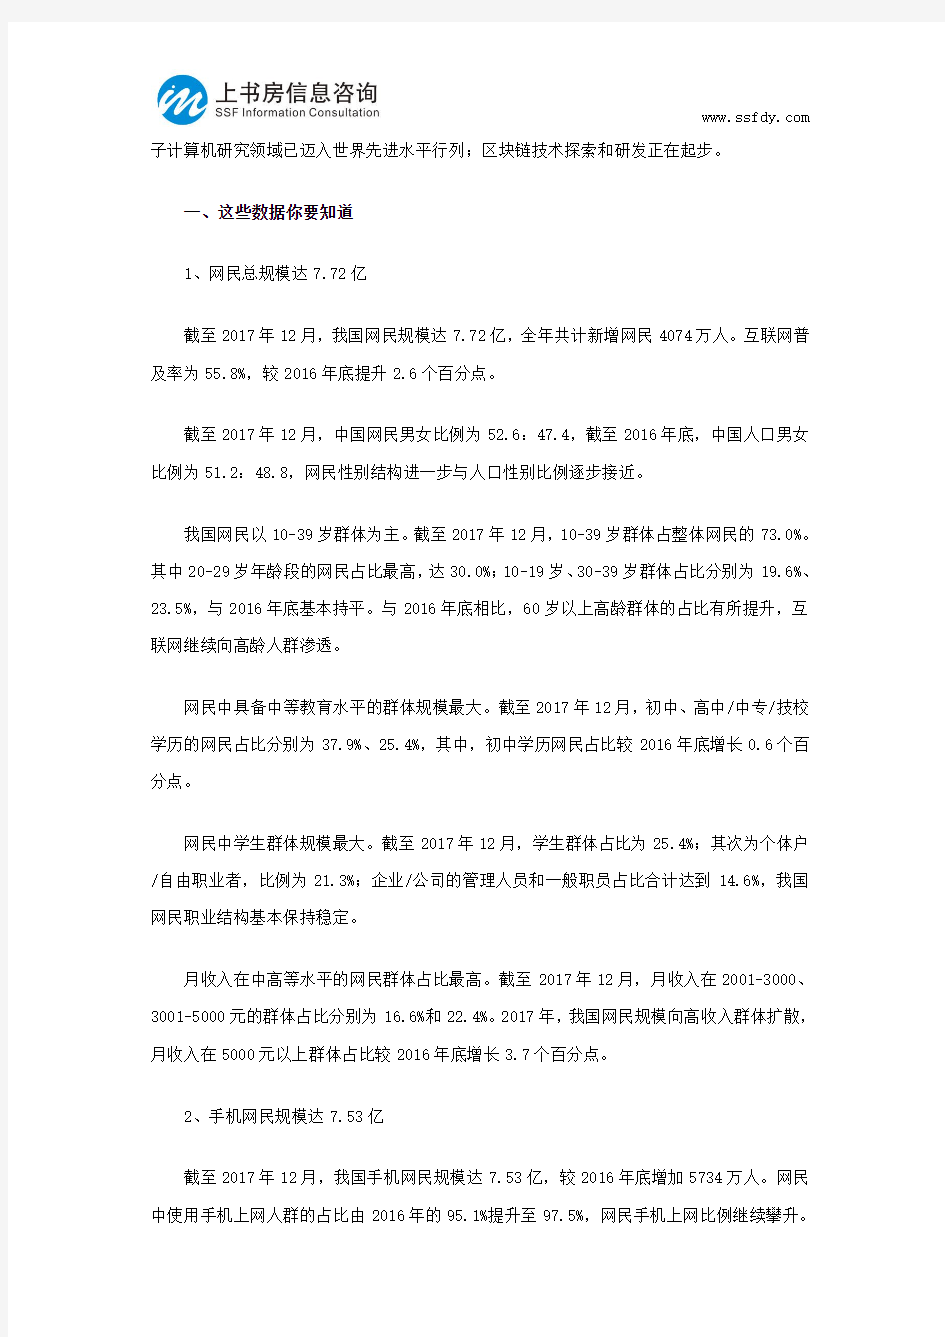 中国互联网络发展市场调研报告-上书房信息咨询